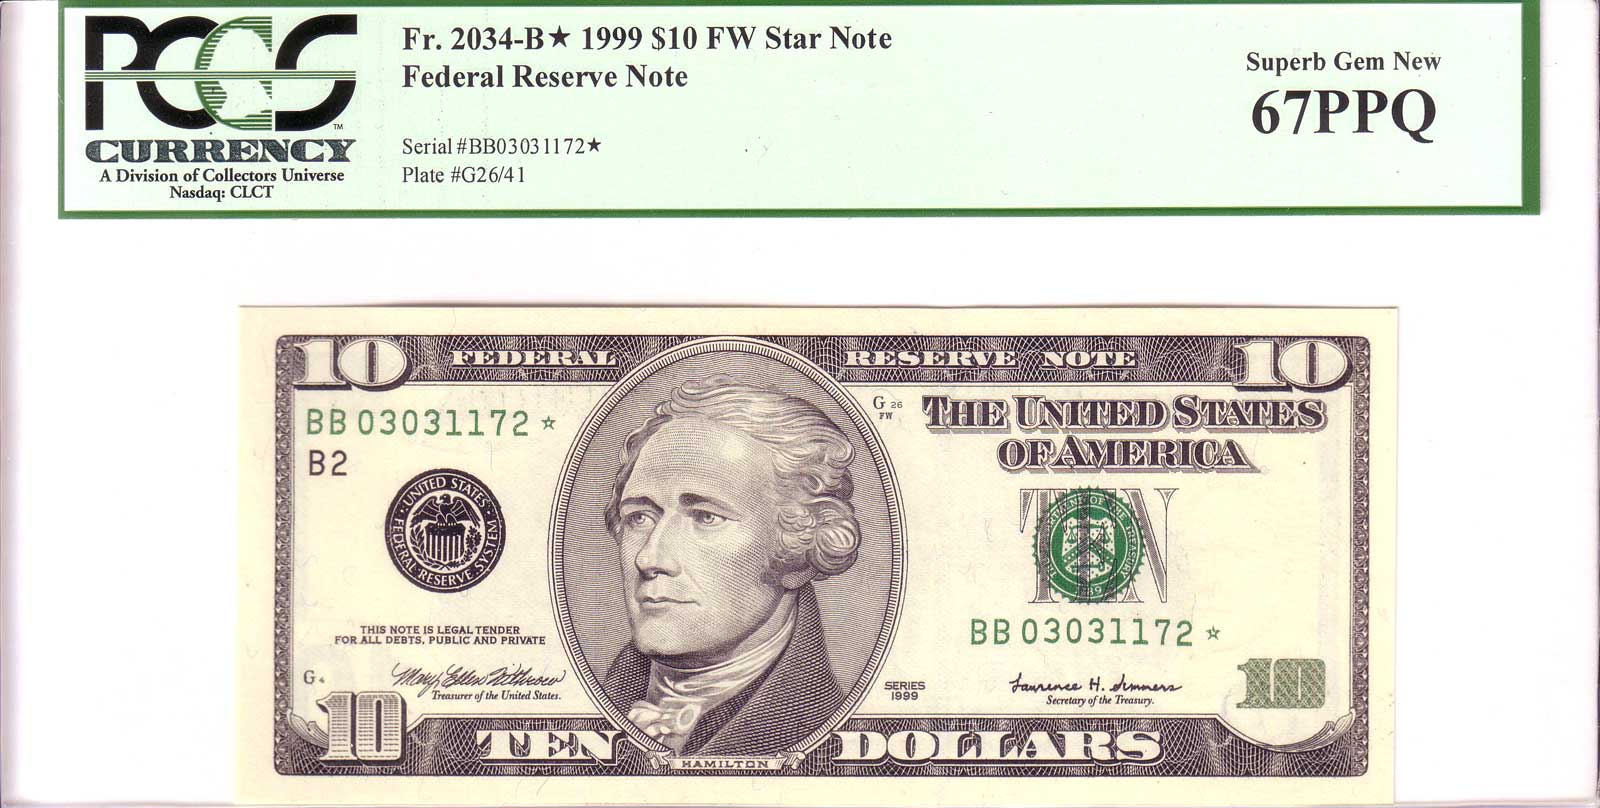 - FR#1987-B* 1999 $5.00 Federal Reserve Star Note CH CU New York - FW 